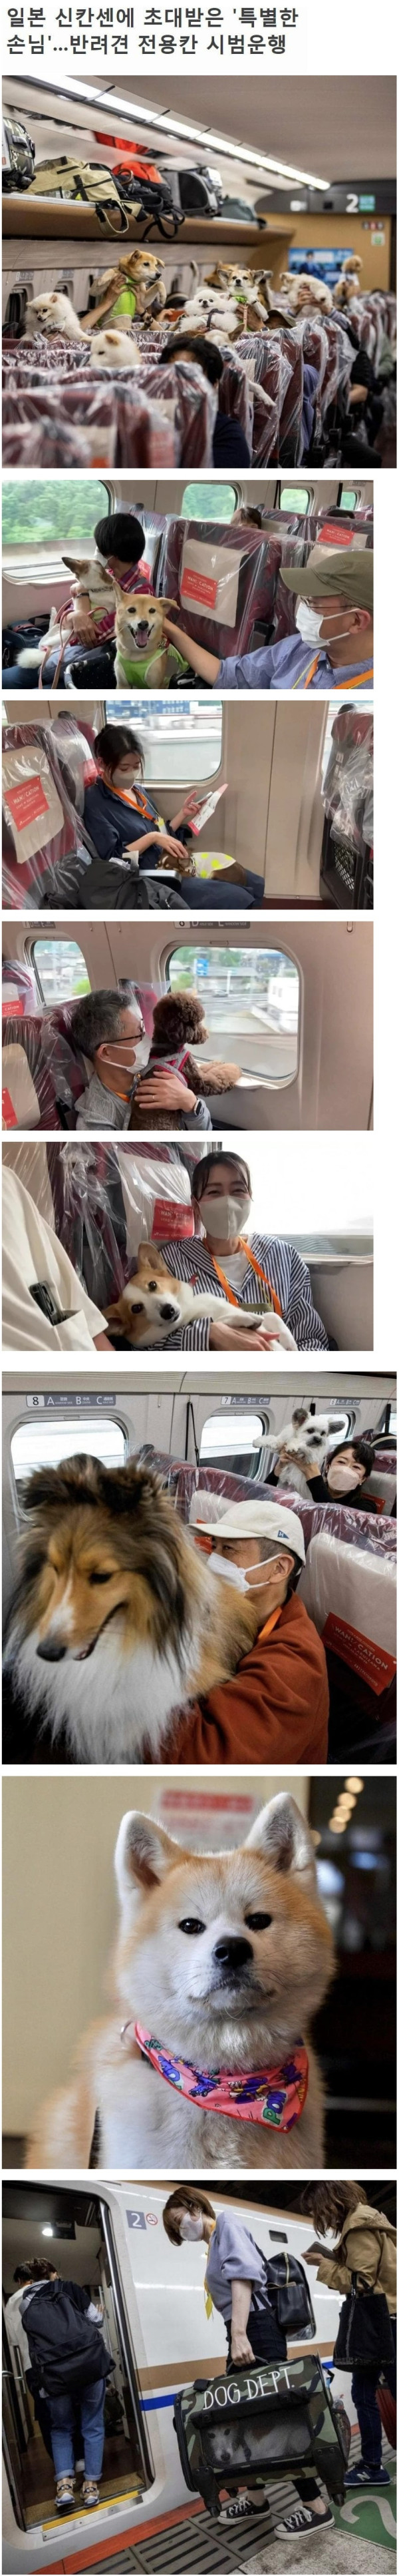 일본에서 시범 운행 중인 전용 열차